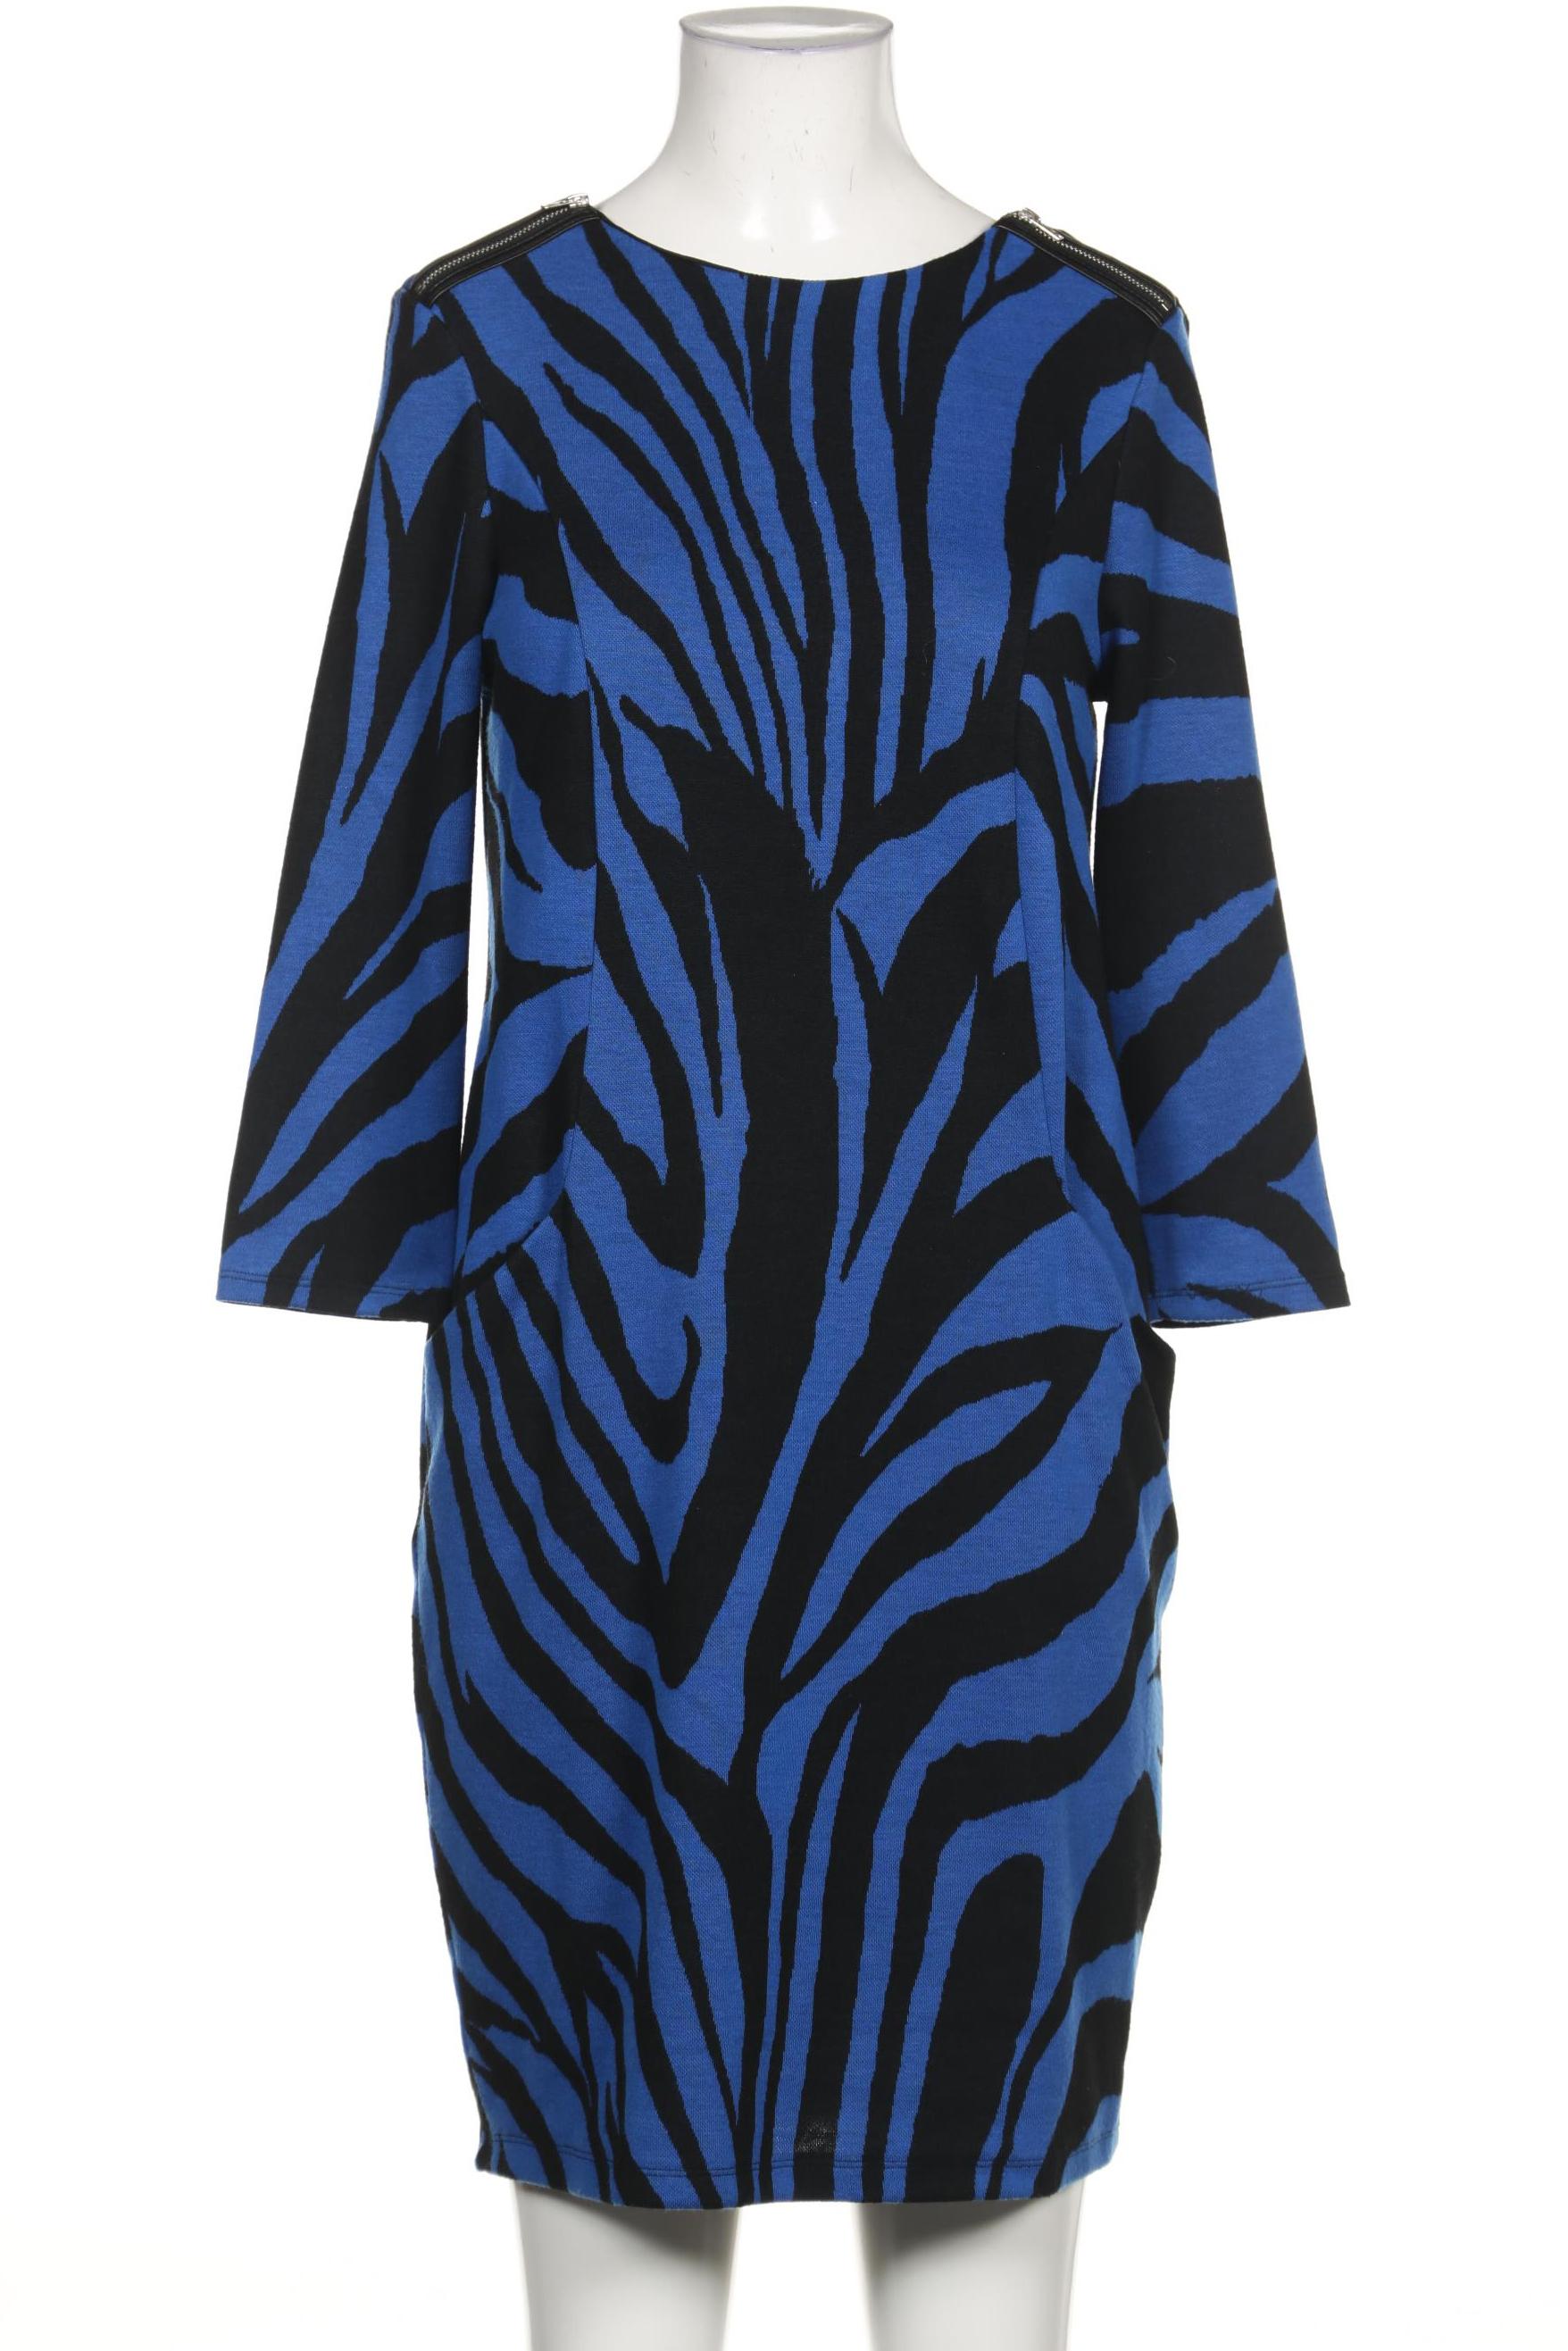 wallis Damen Kleid, blau von Wallis